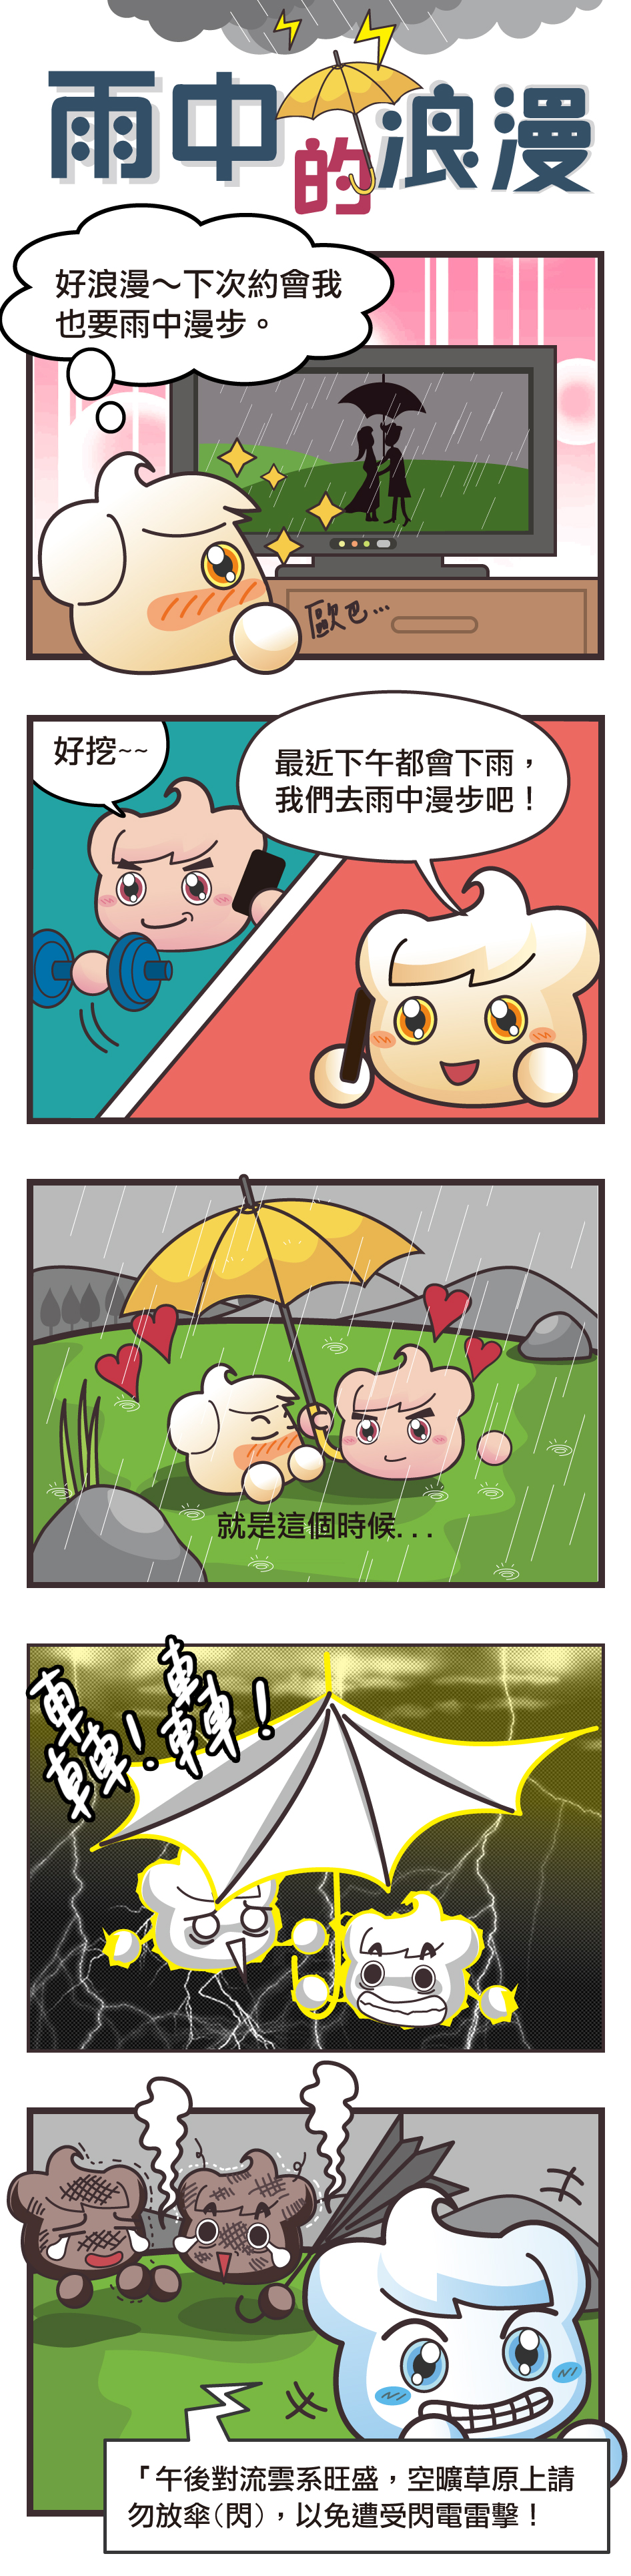 五格漫畫：雨中的浪漫。春雲寶羨慕偶像劇裡雨中談情的浪漫約會，於是趁下午下雨時和夏雲寶出去約會，結果兩人因為在空曠草原上放傘而被雷擊。